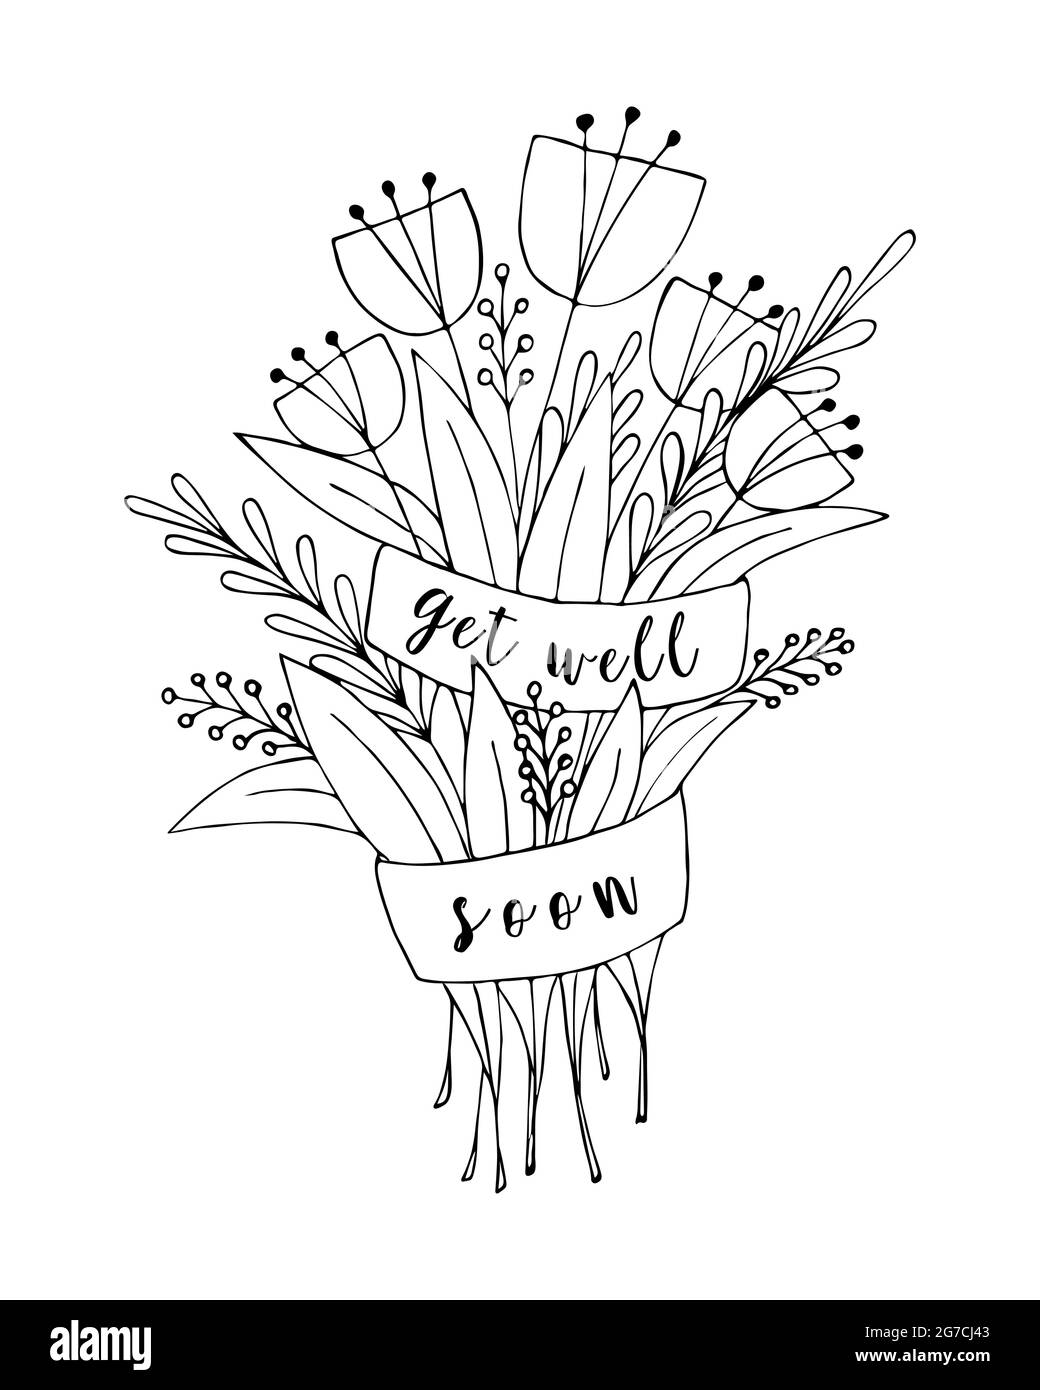 Bouquet de fleurs doodle avec l'inscription Get Well Soon, carte de voeux, désir de santé. Griffonnage de fleurs, dessin à la main, fond blanc. Illustration vectorielle. Illustration de Vecteur